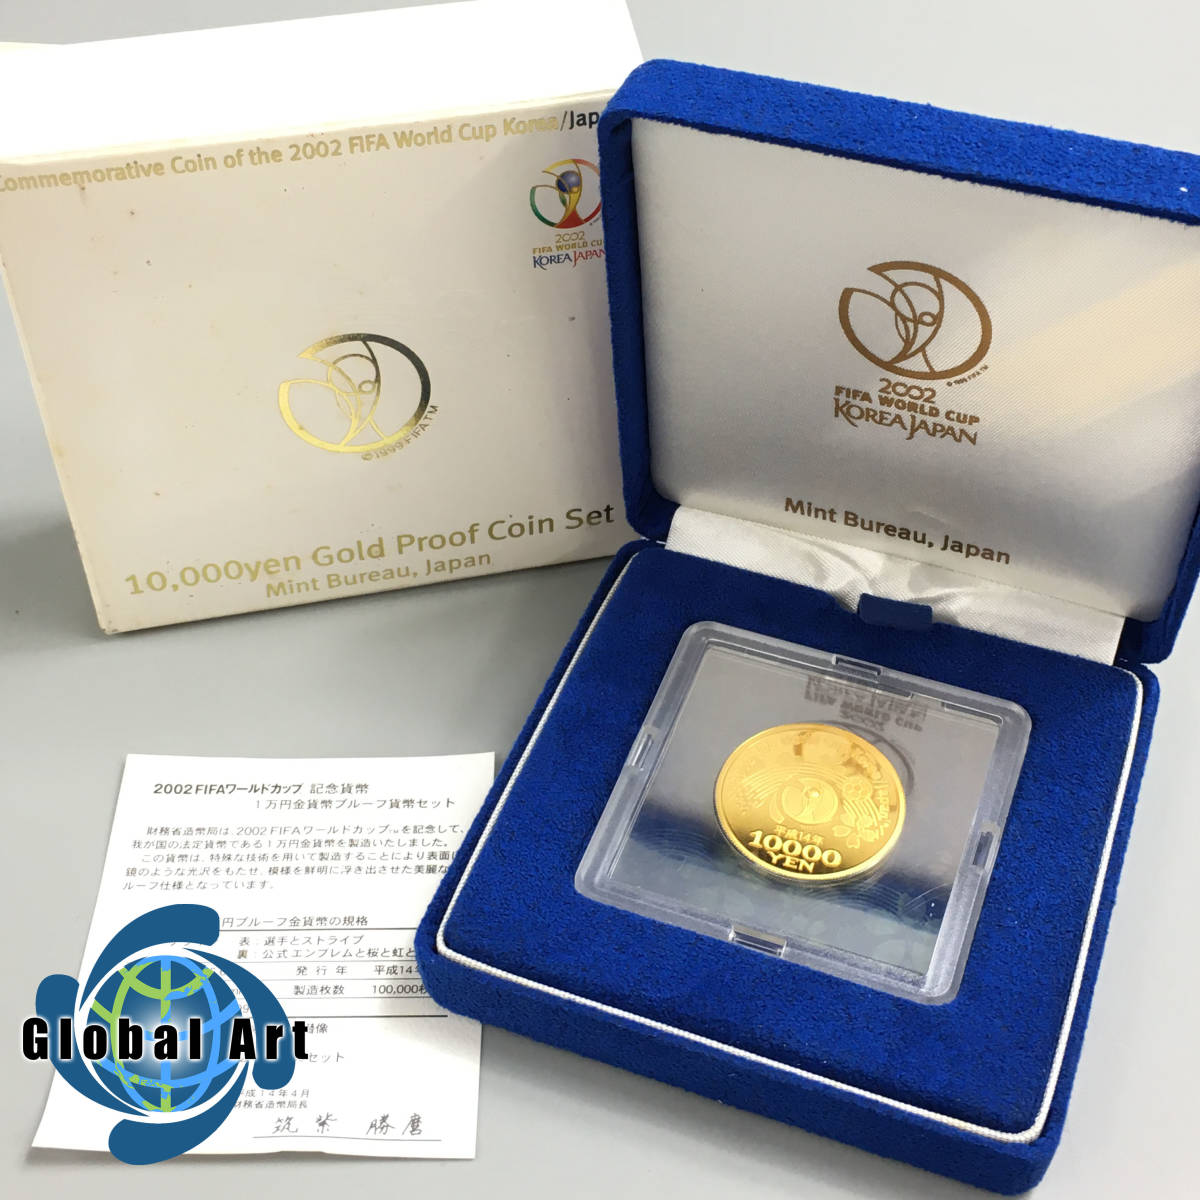 人気スポー新作 2002FIFAワールドカップ日韓記念プルーフ硬貨